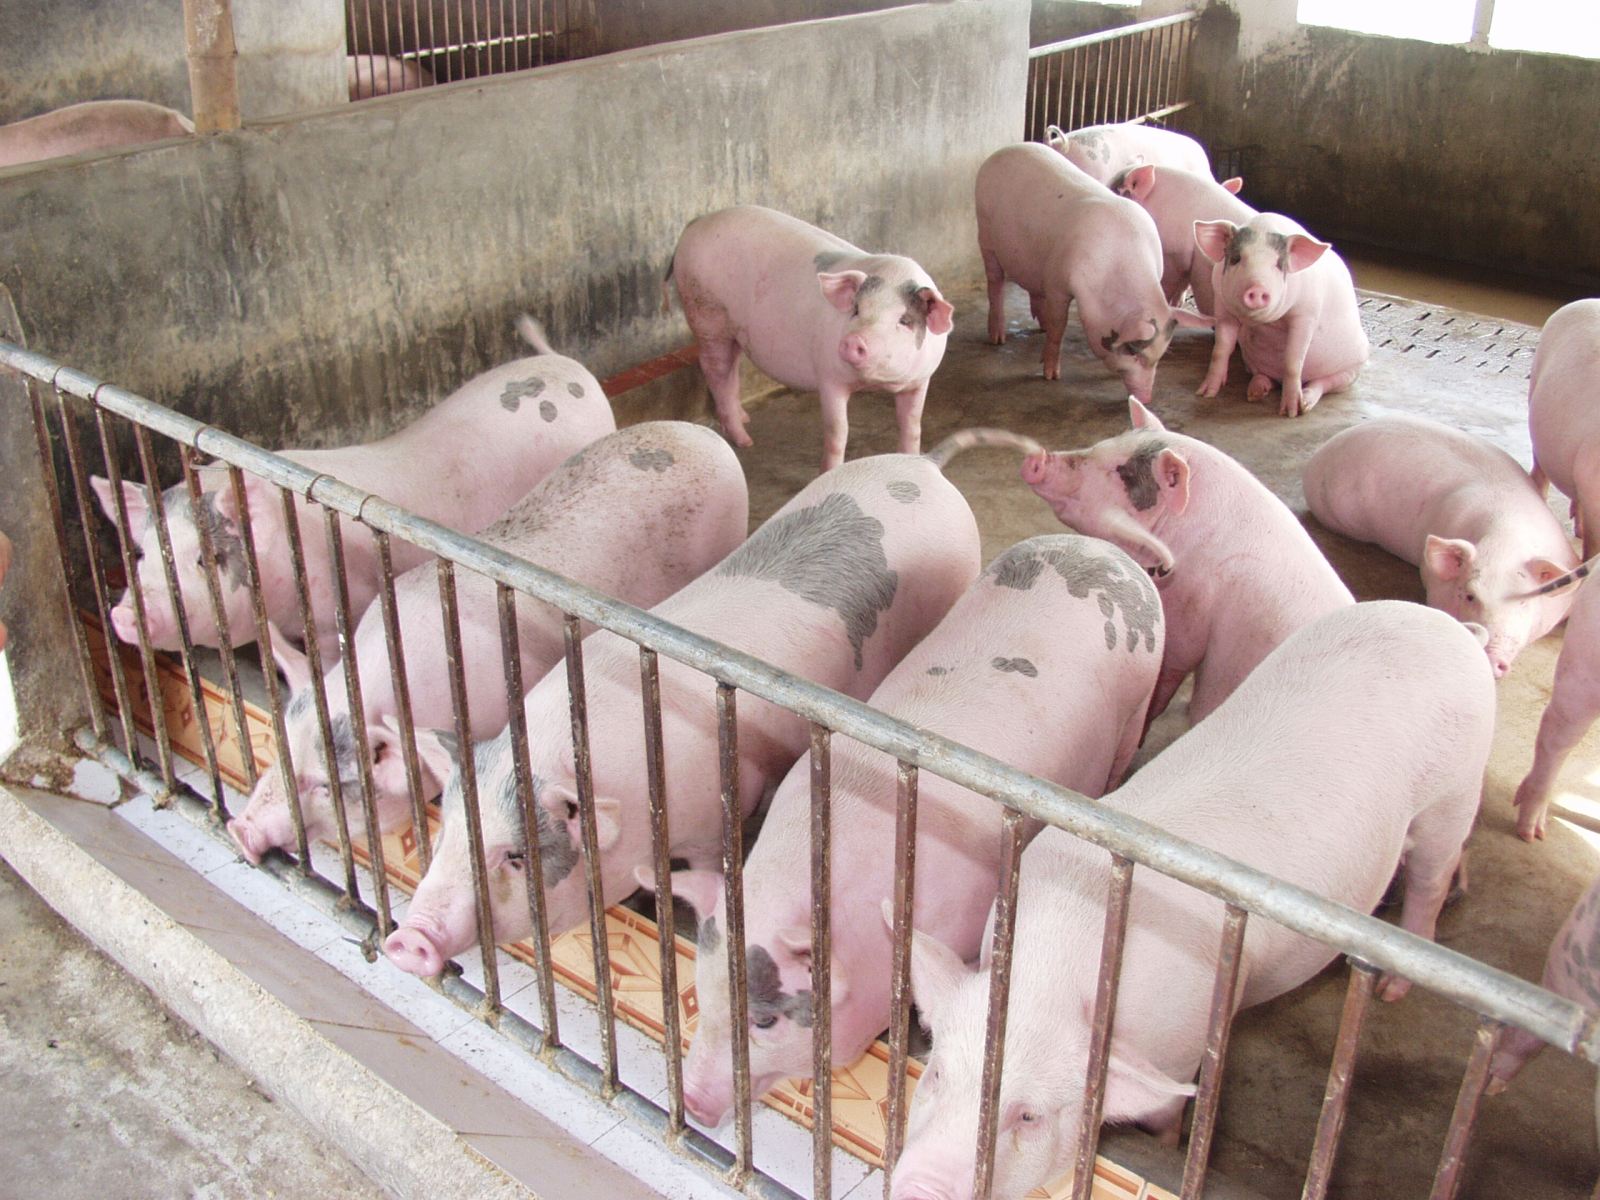 Lực lượng chức năng đã phát hiện 3 trang trại chăn nuôi ở Thanh Hóa sử dụng chất tạo nạc Salbutamol vượt mức cho phép